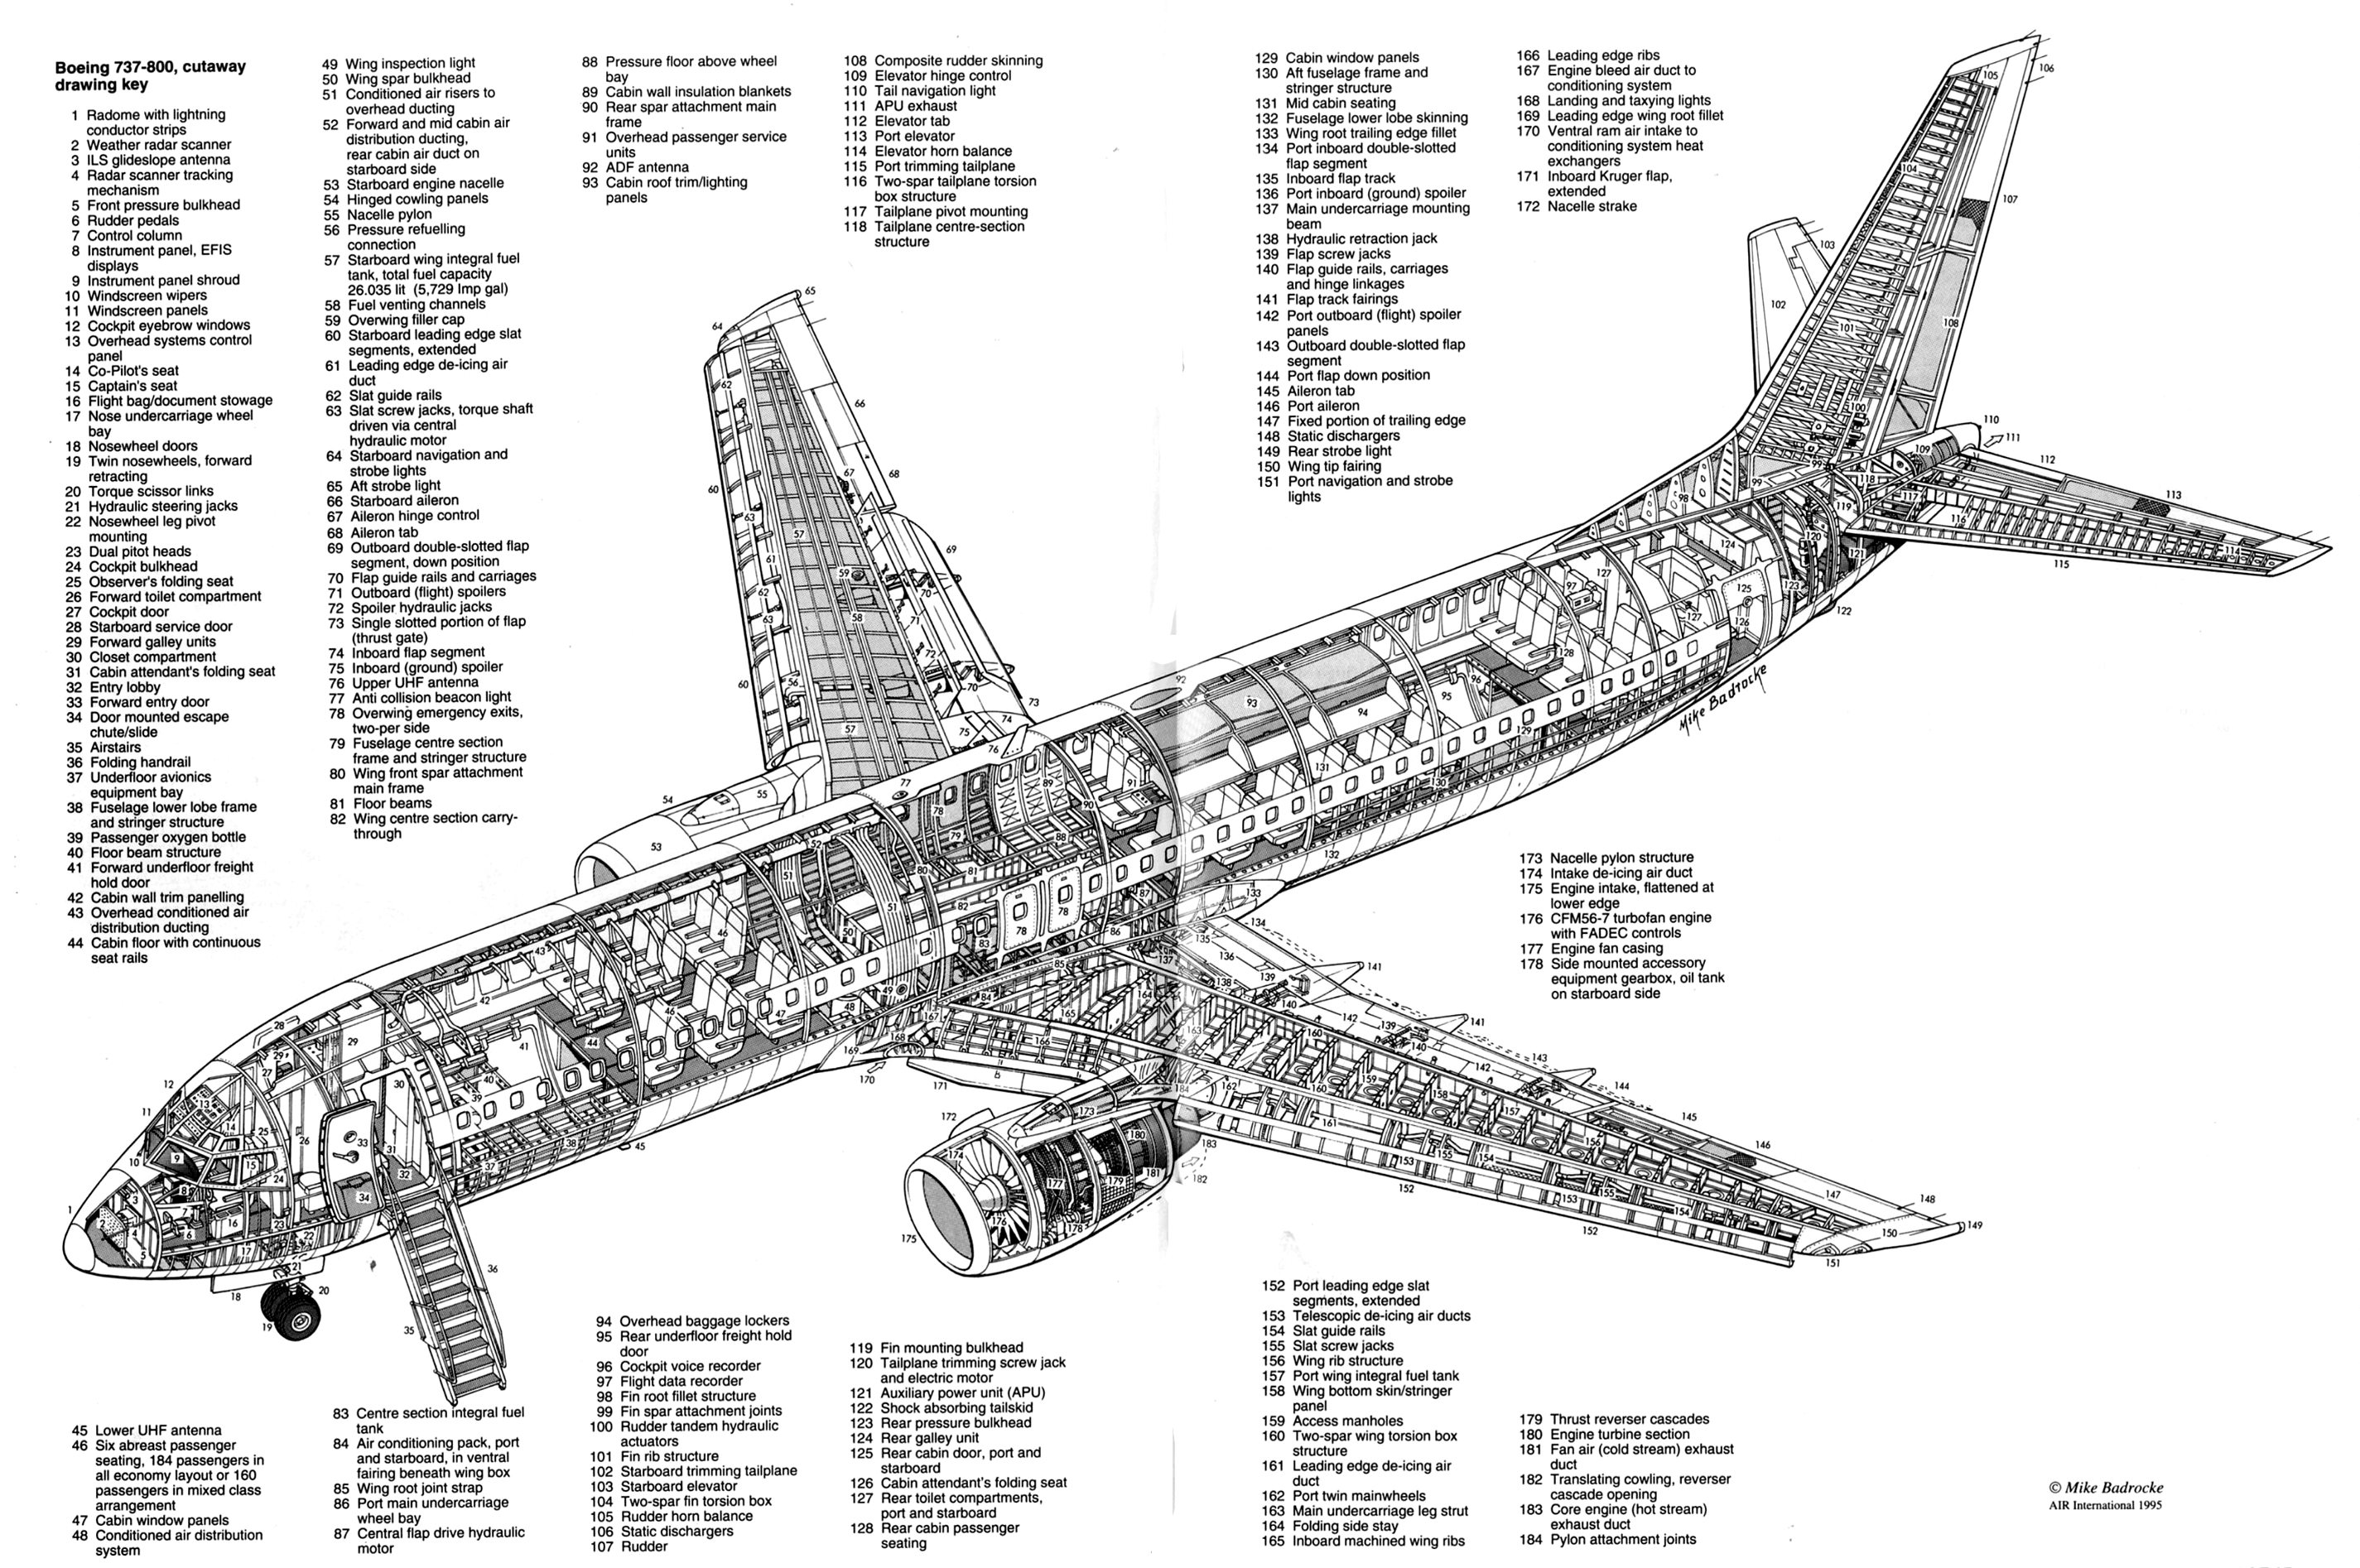 Boeing 737-800 cut-away drawing | (c) Mike Badrocke